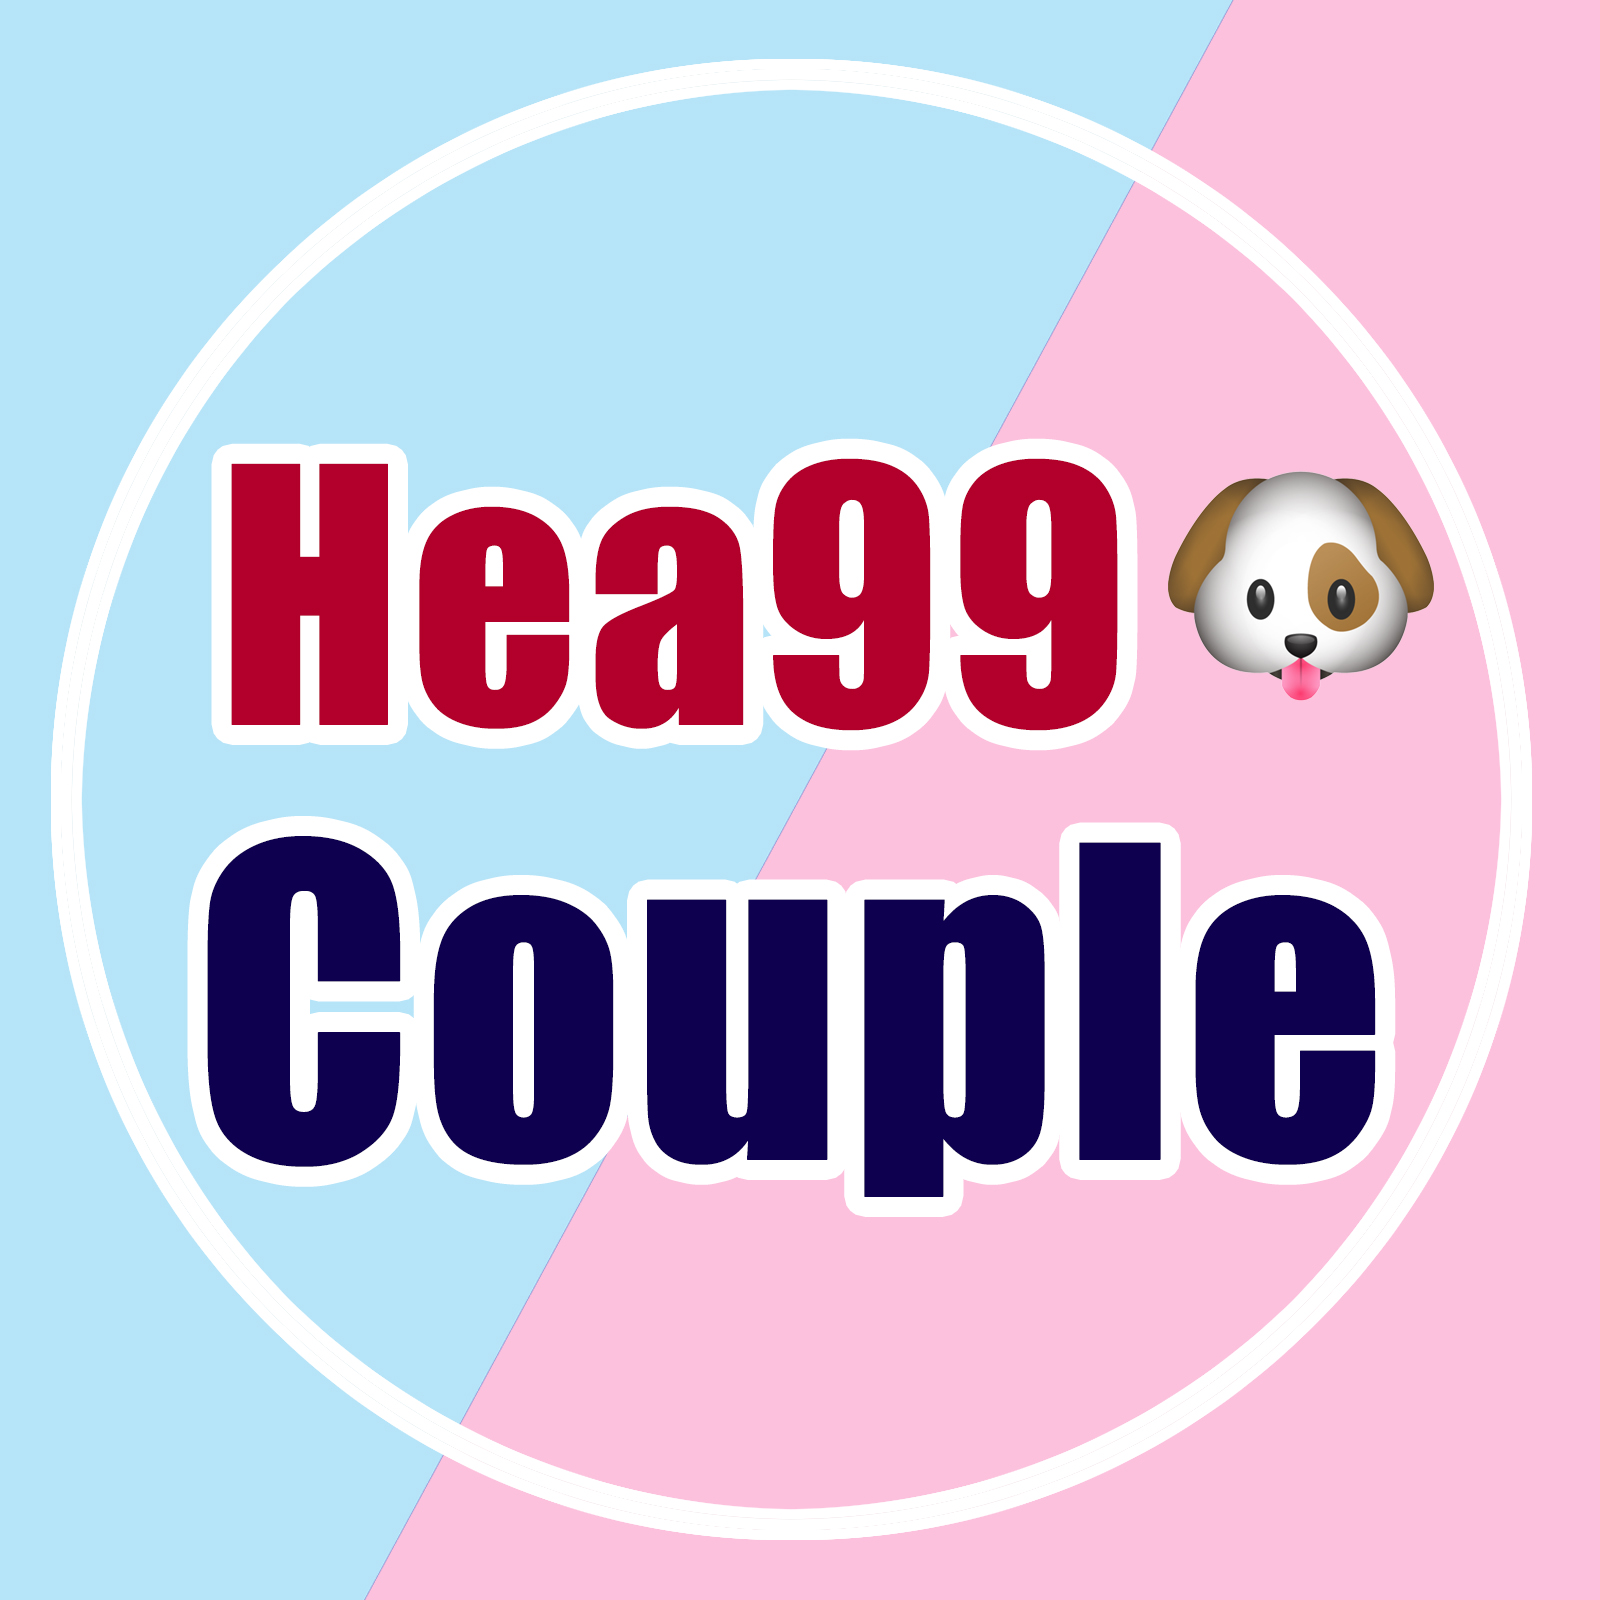 Hea99Couple